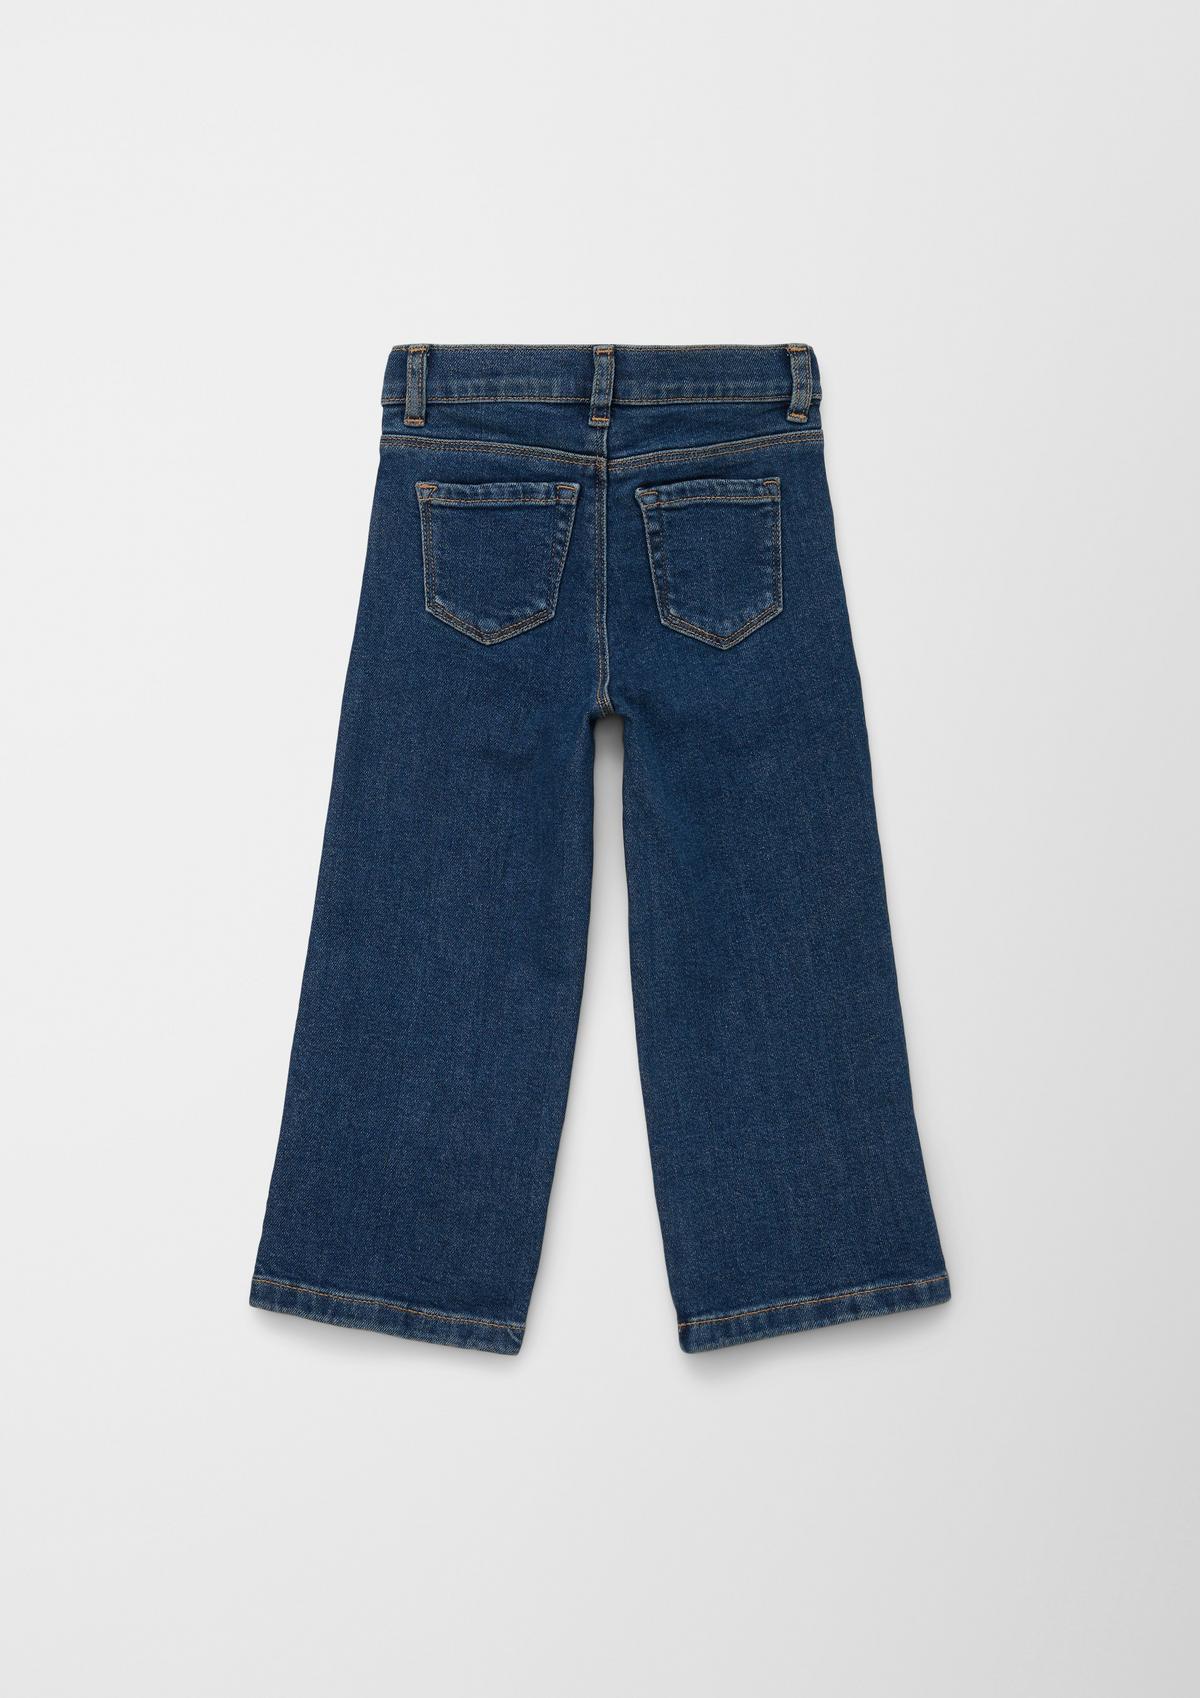 s.Oliver Jeans hlače / kroj Regular Fit/ Mid Rise / široke hlačnice / po širini nastavljive